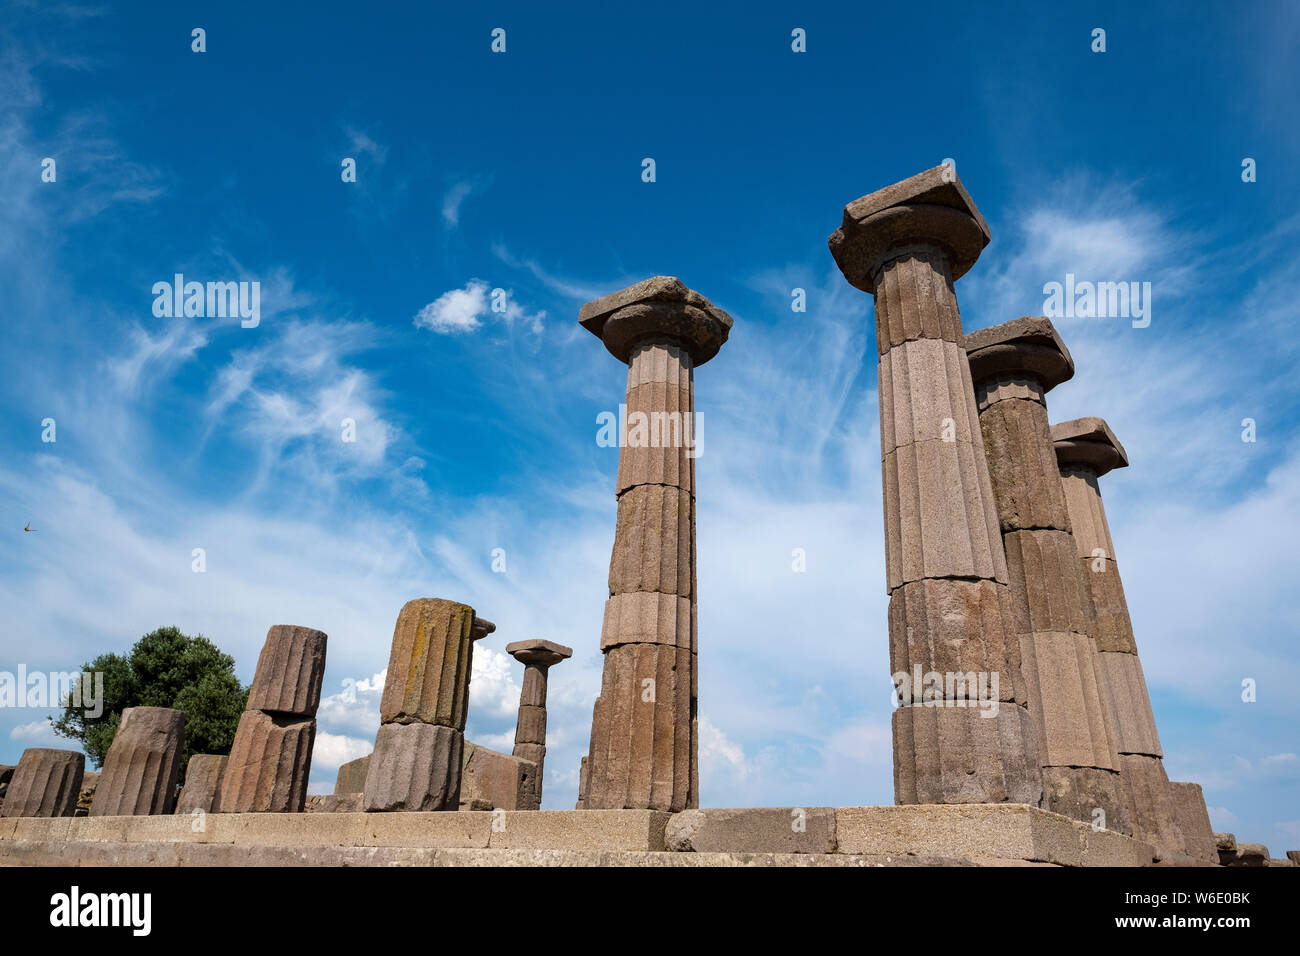 Les autres colonnes doriques du grec ancien temple d'Athéna sur une colline donnant sur la mer Égée dans l'actuelle Turquie, Behramkale Banque D'Images